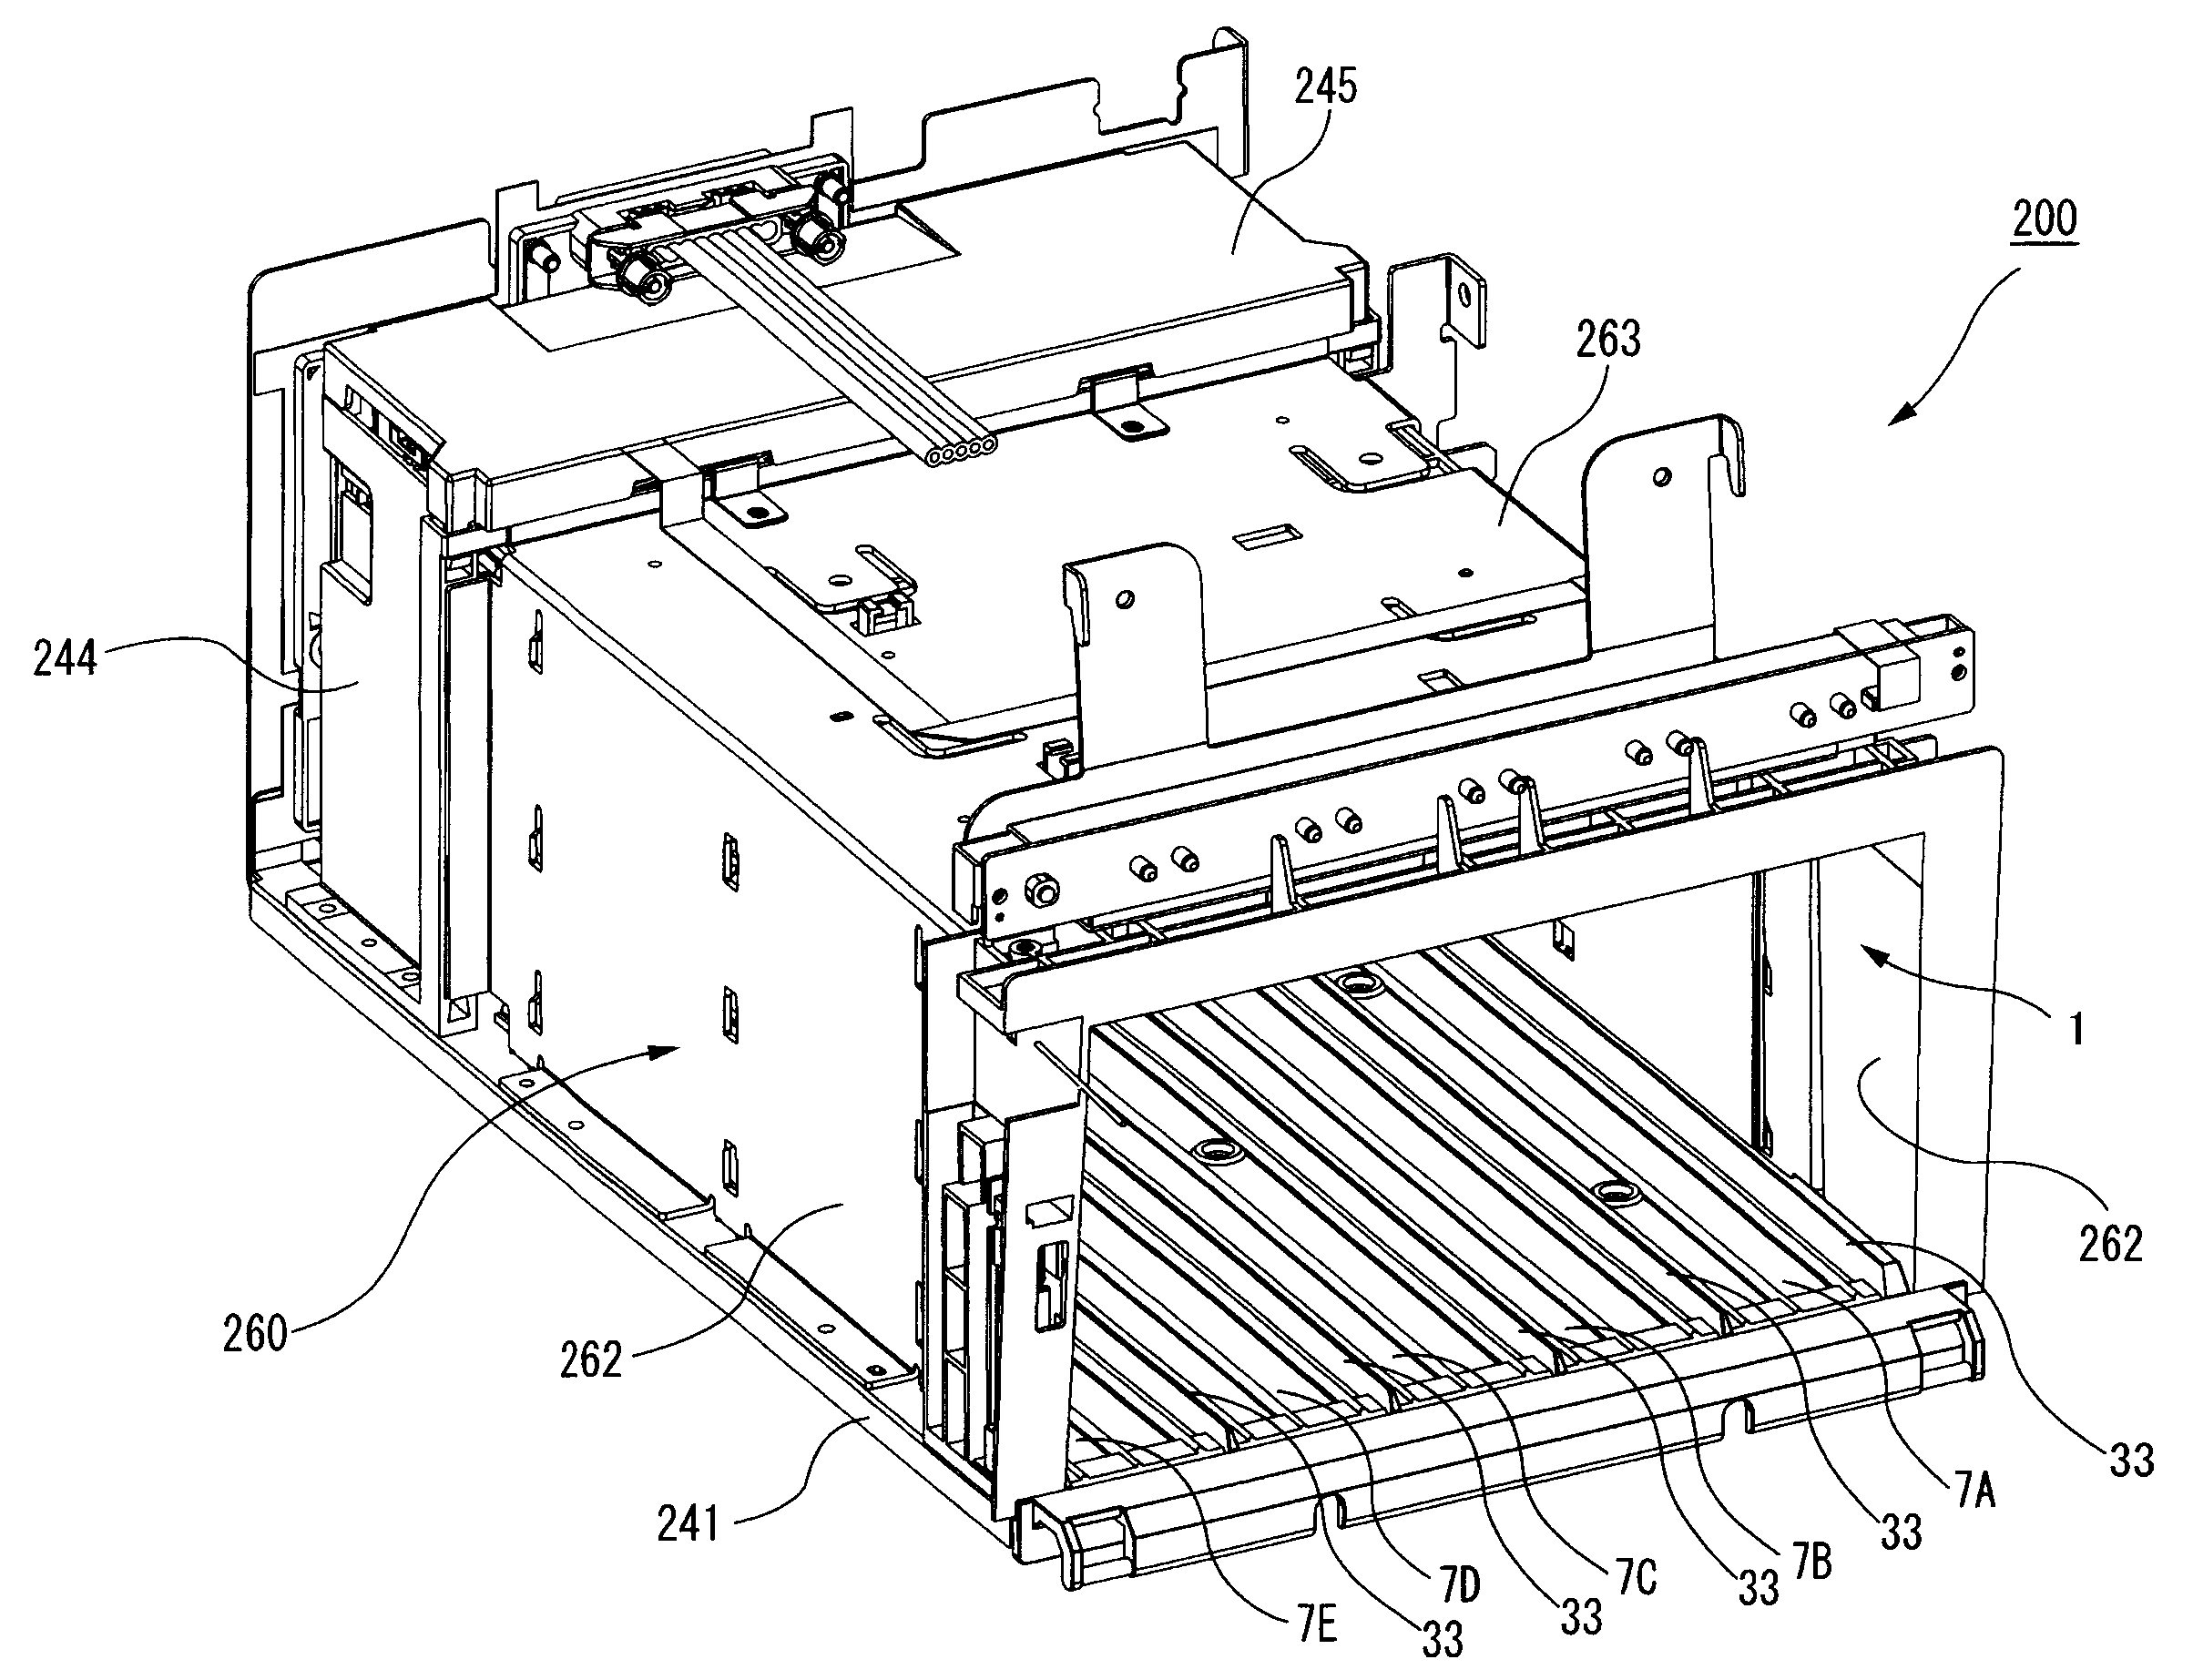 Liquid container, container holder and liquid consuming apparatus